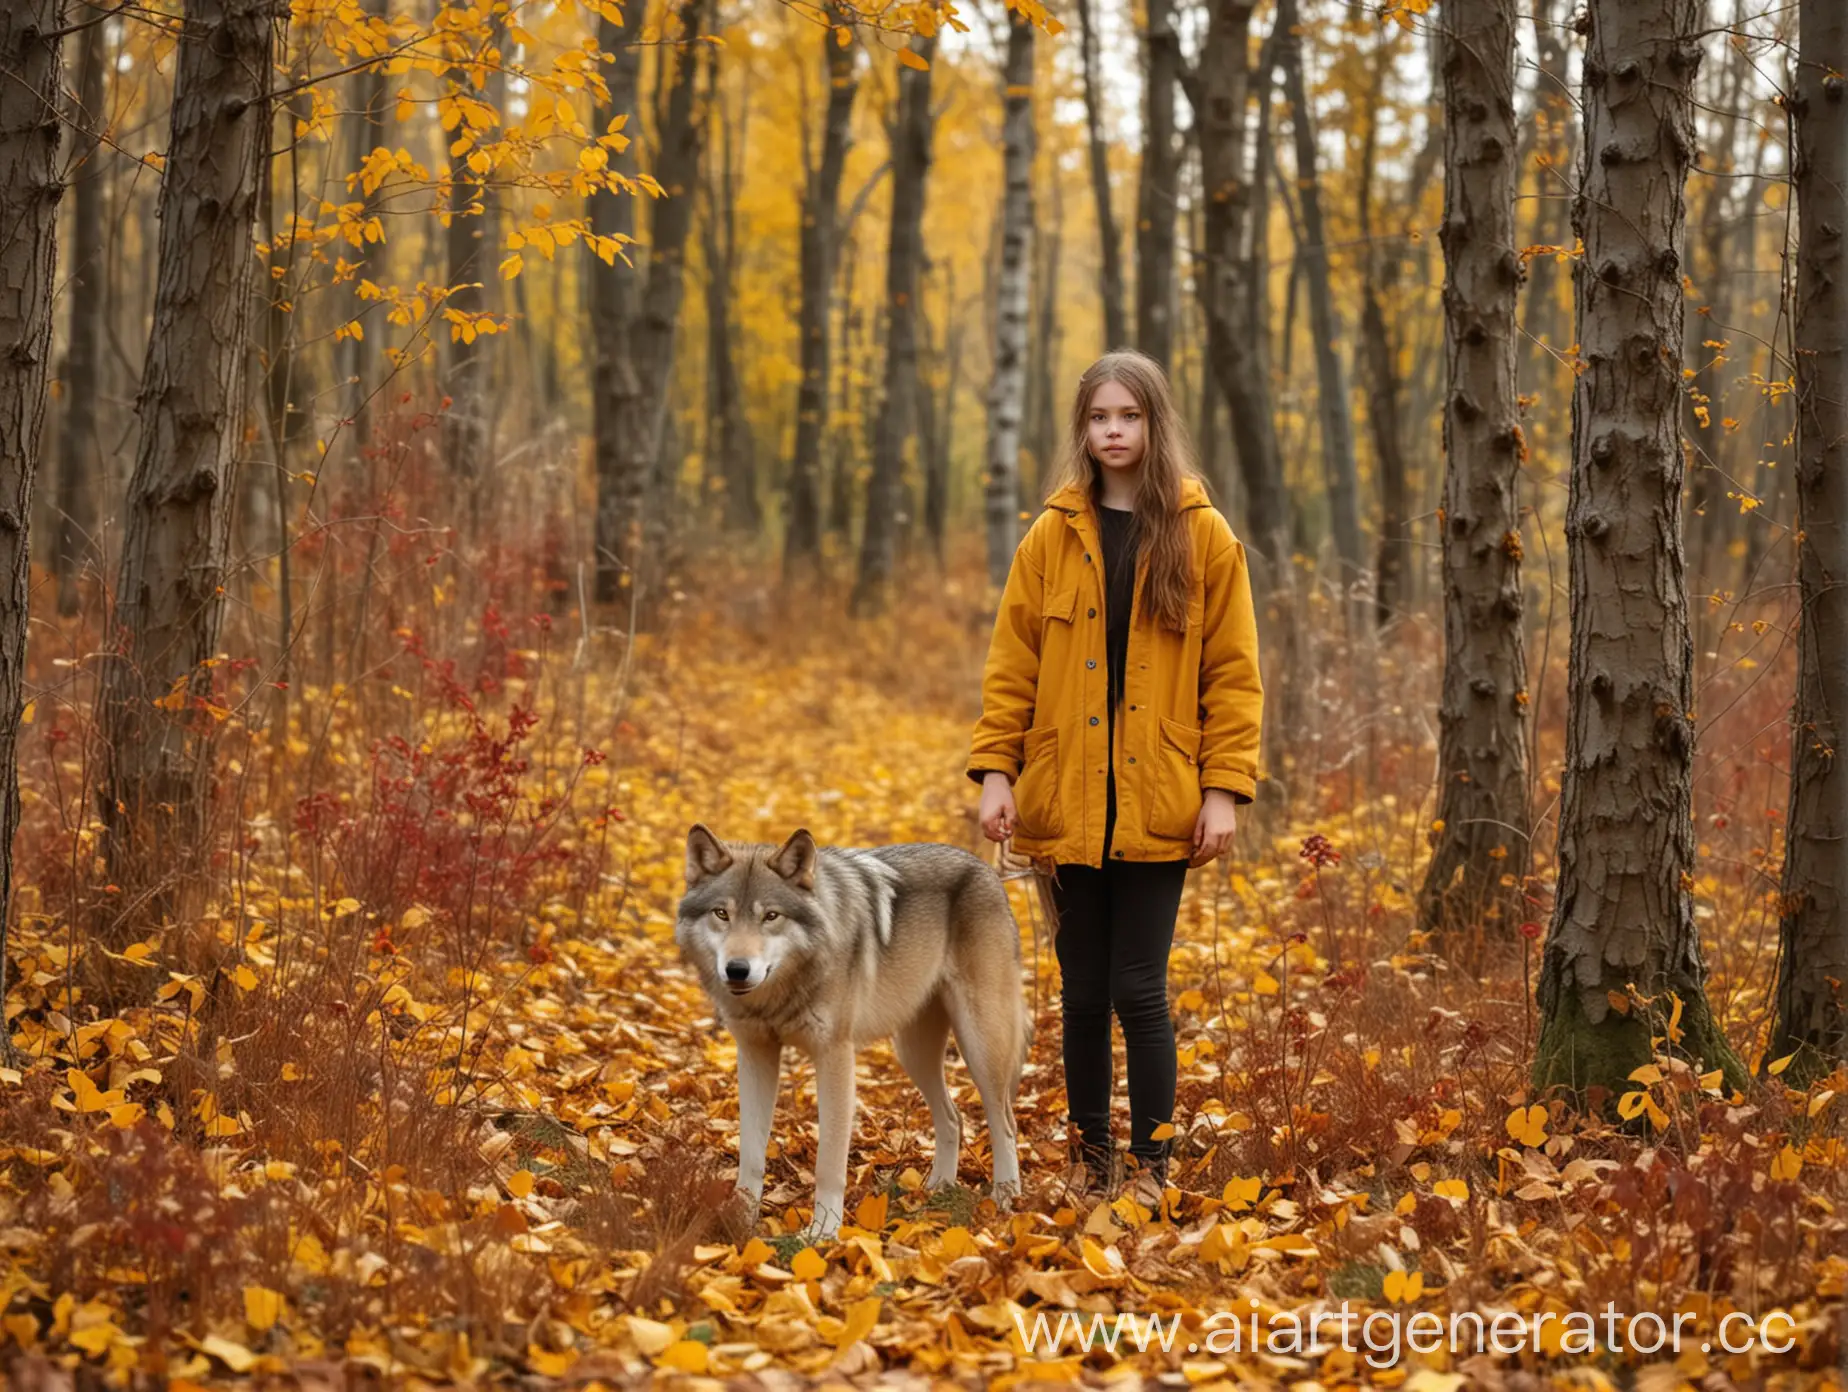 Девочка стоит на осенней поляне, рядом стоит волк, по краям растут кусты с жёлтыми и бордовыми листьями, фон сильно размыт